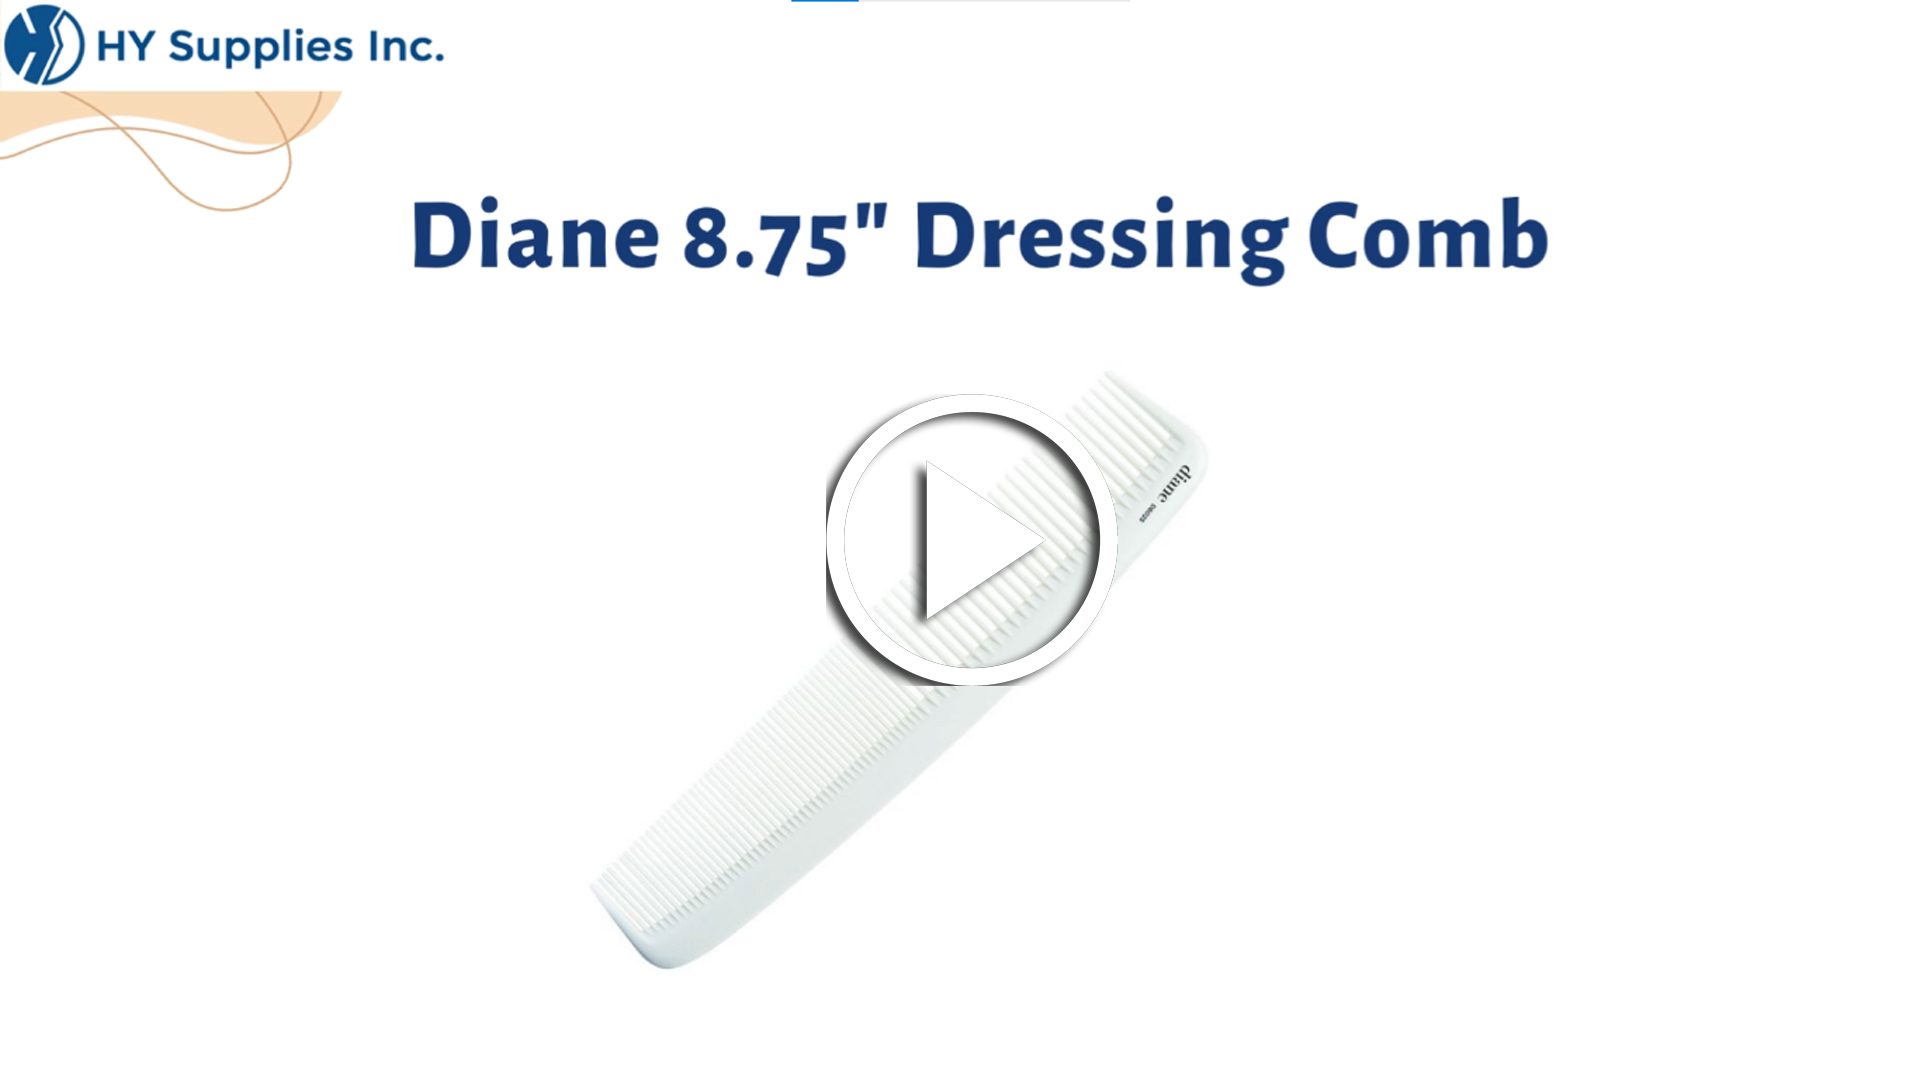 Diane 8.75" Dressing Comb